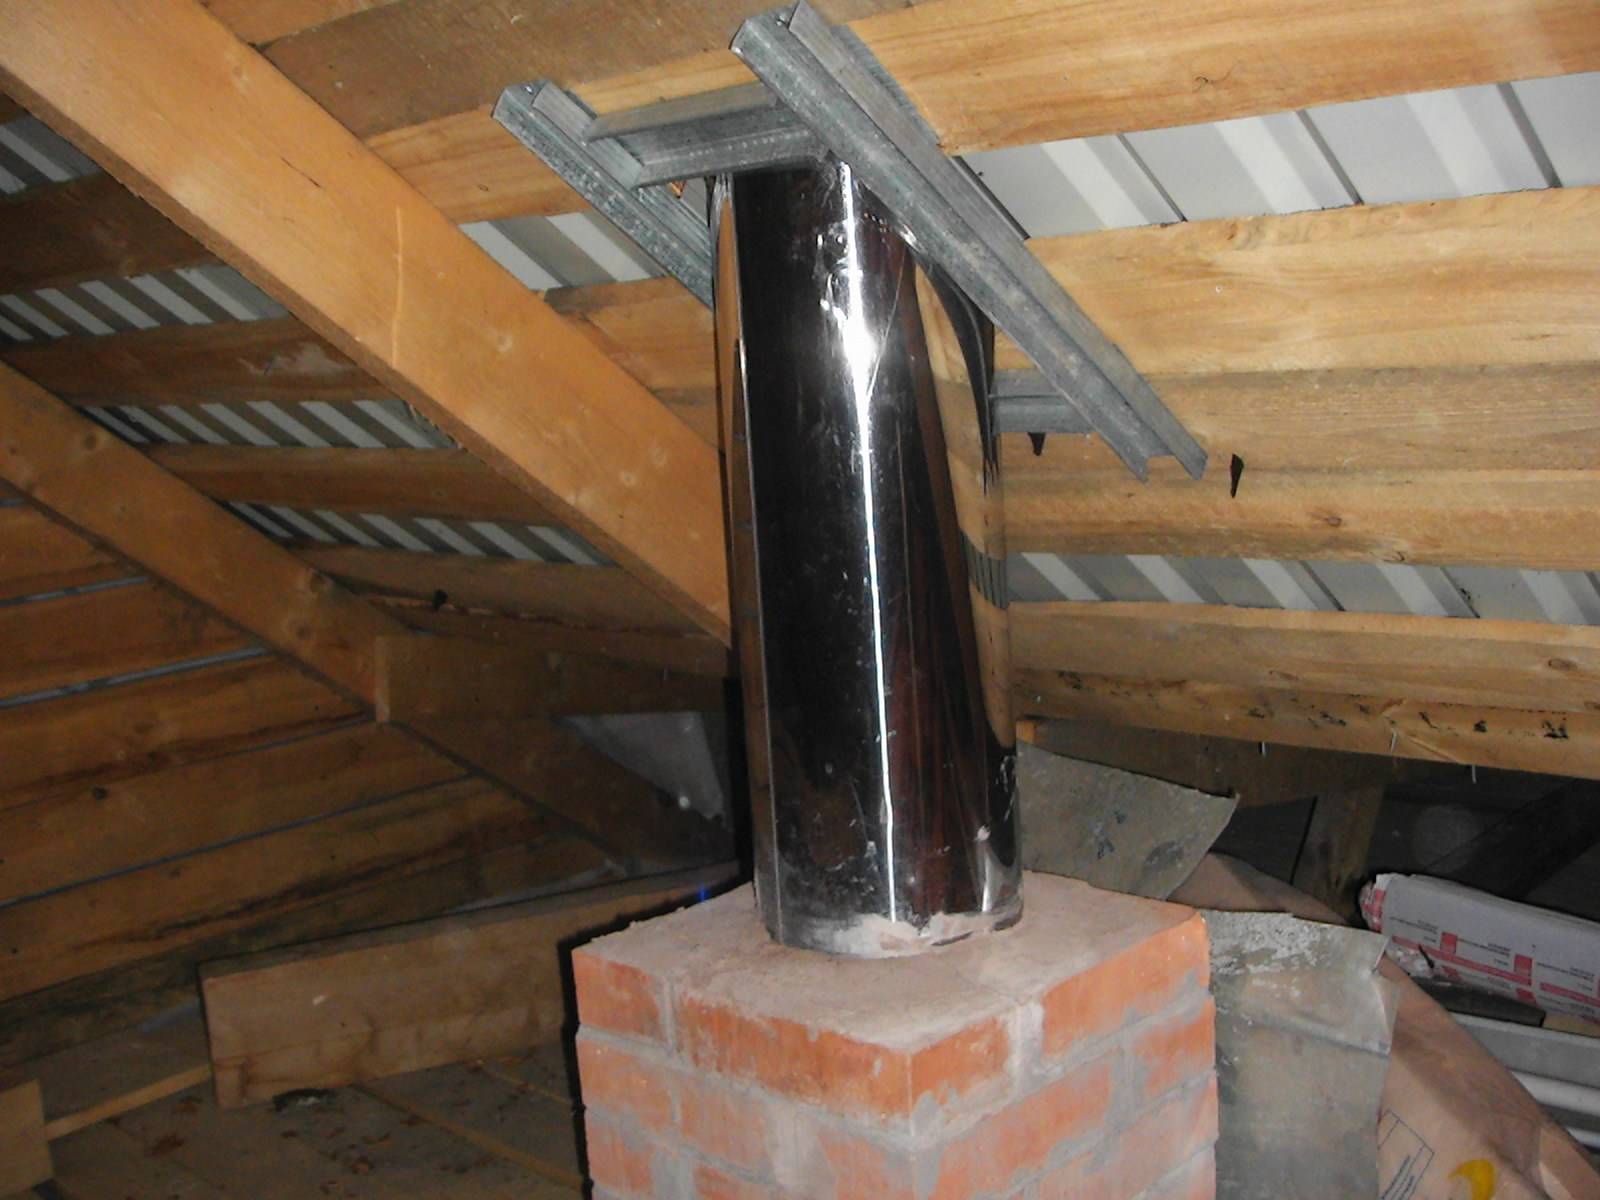 Дымоход для бани своими руками: пошаговое руководство, установка и проход трубы через потолок и крышу